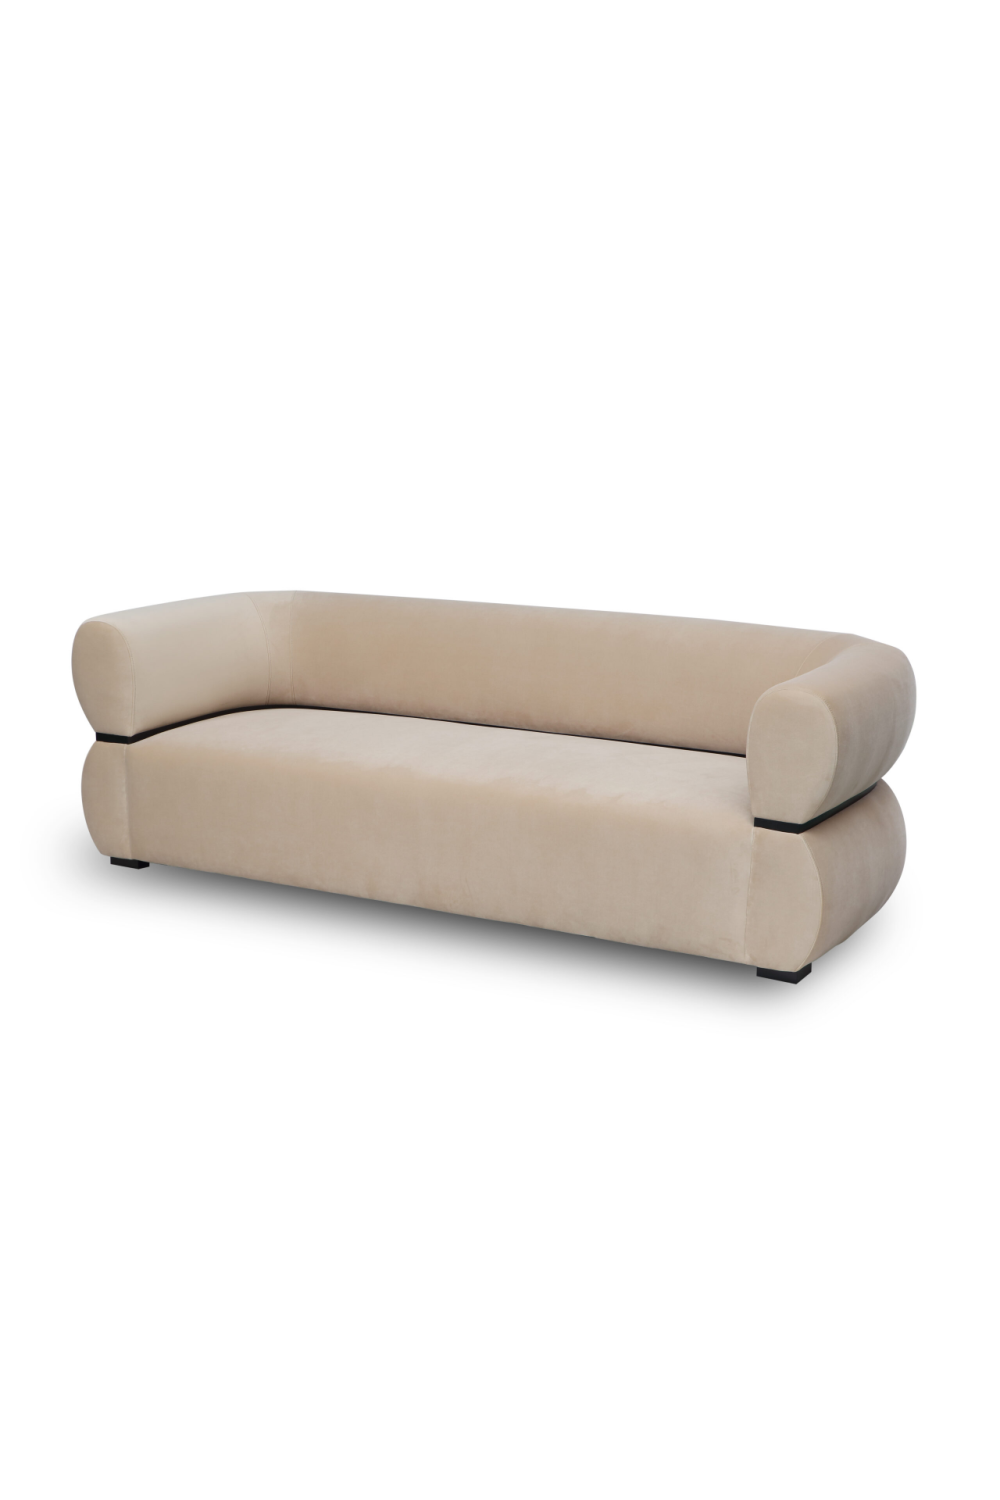 Beige Velvet Curved Sofa | Liang & Eimil Volta | OROA.com